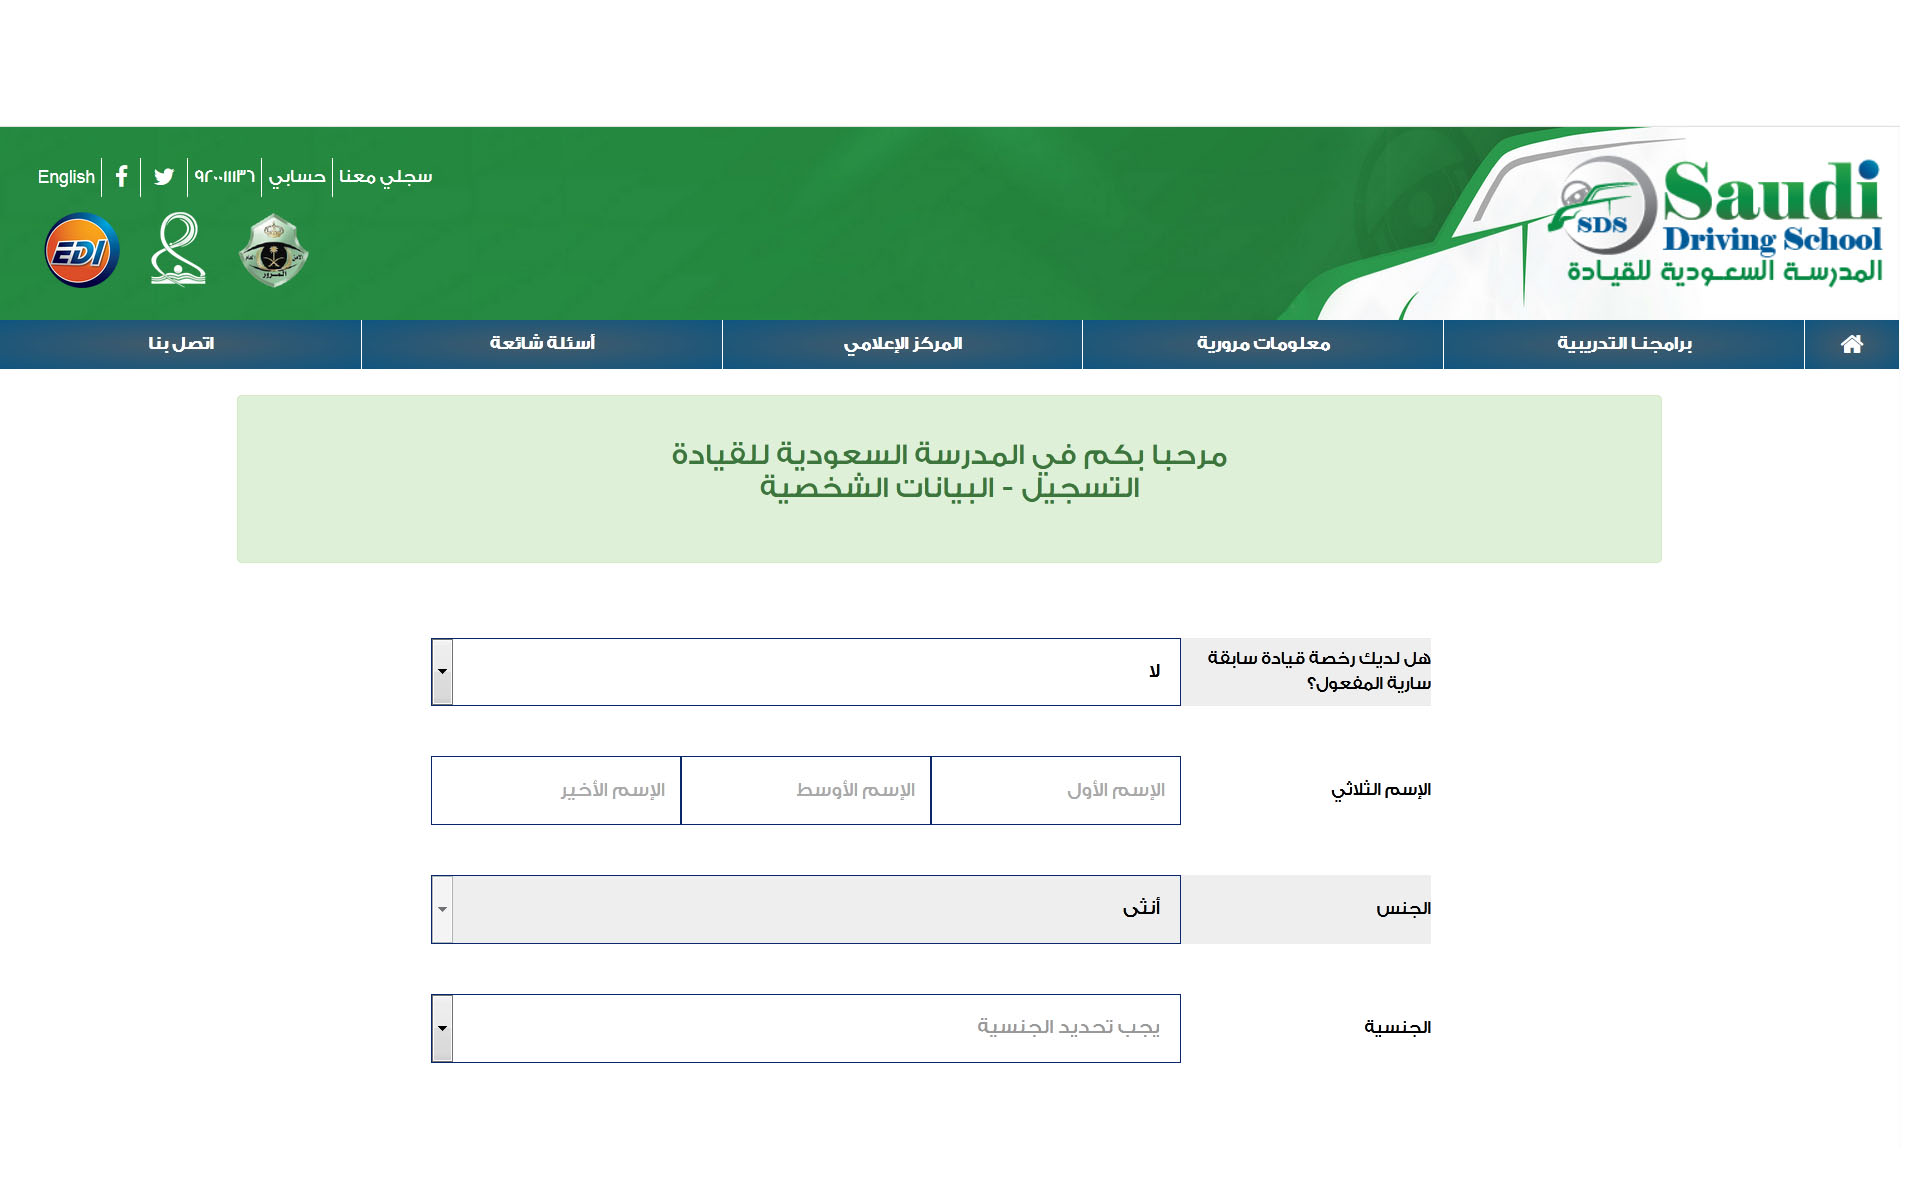 التسجيل في المدرسة السعودية للقيادة رقم مدرسة القيادة في السعودية ثقفني